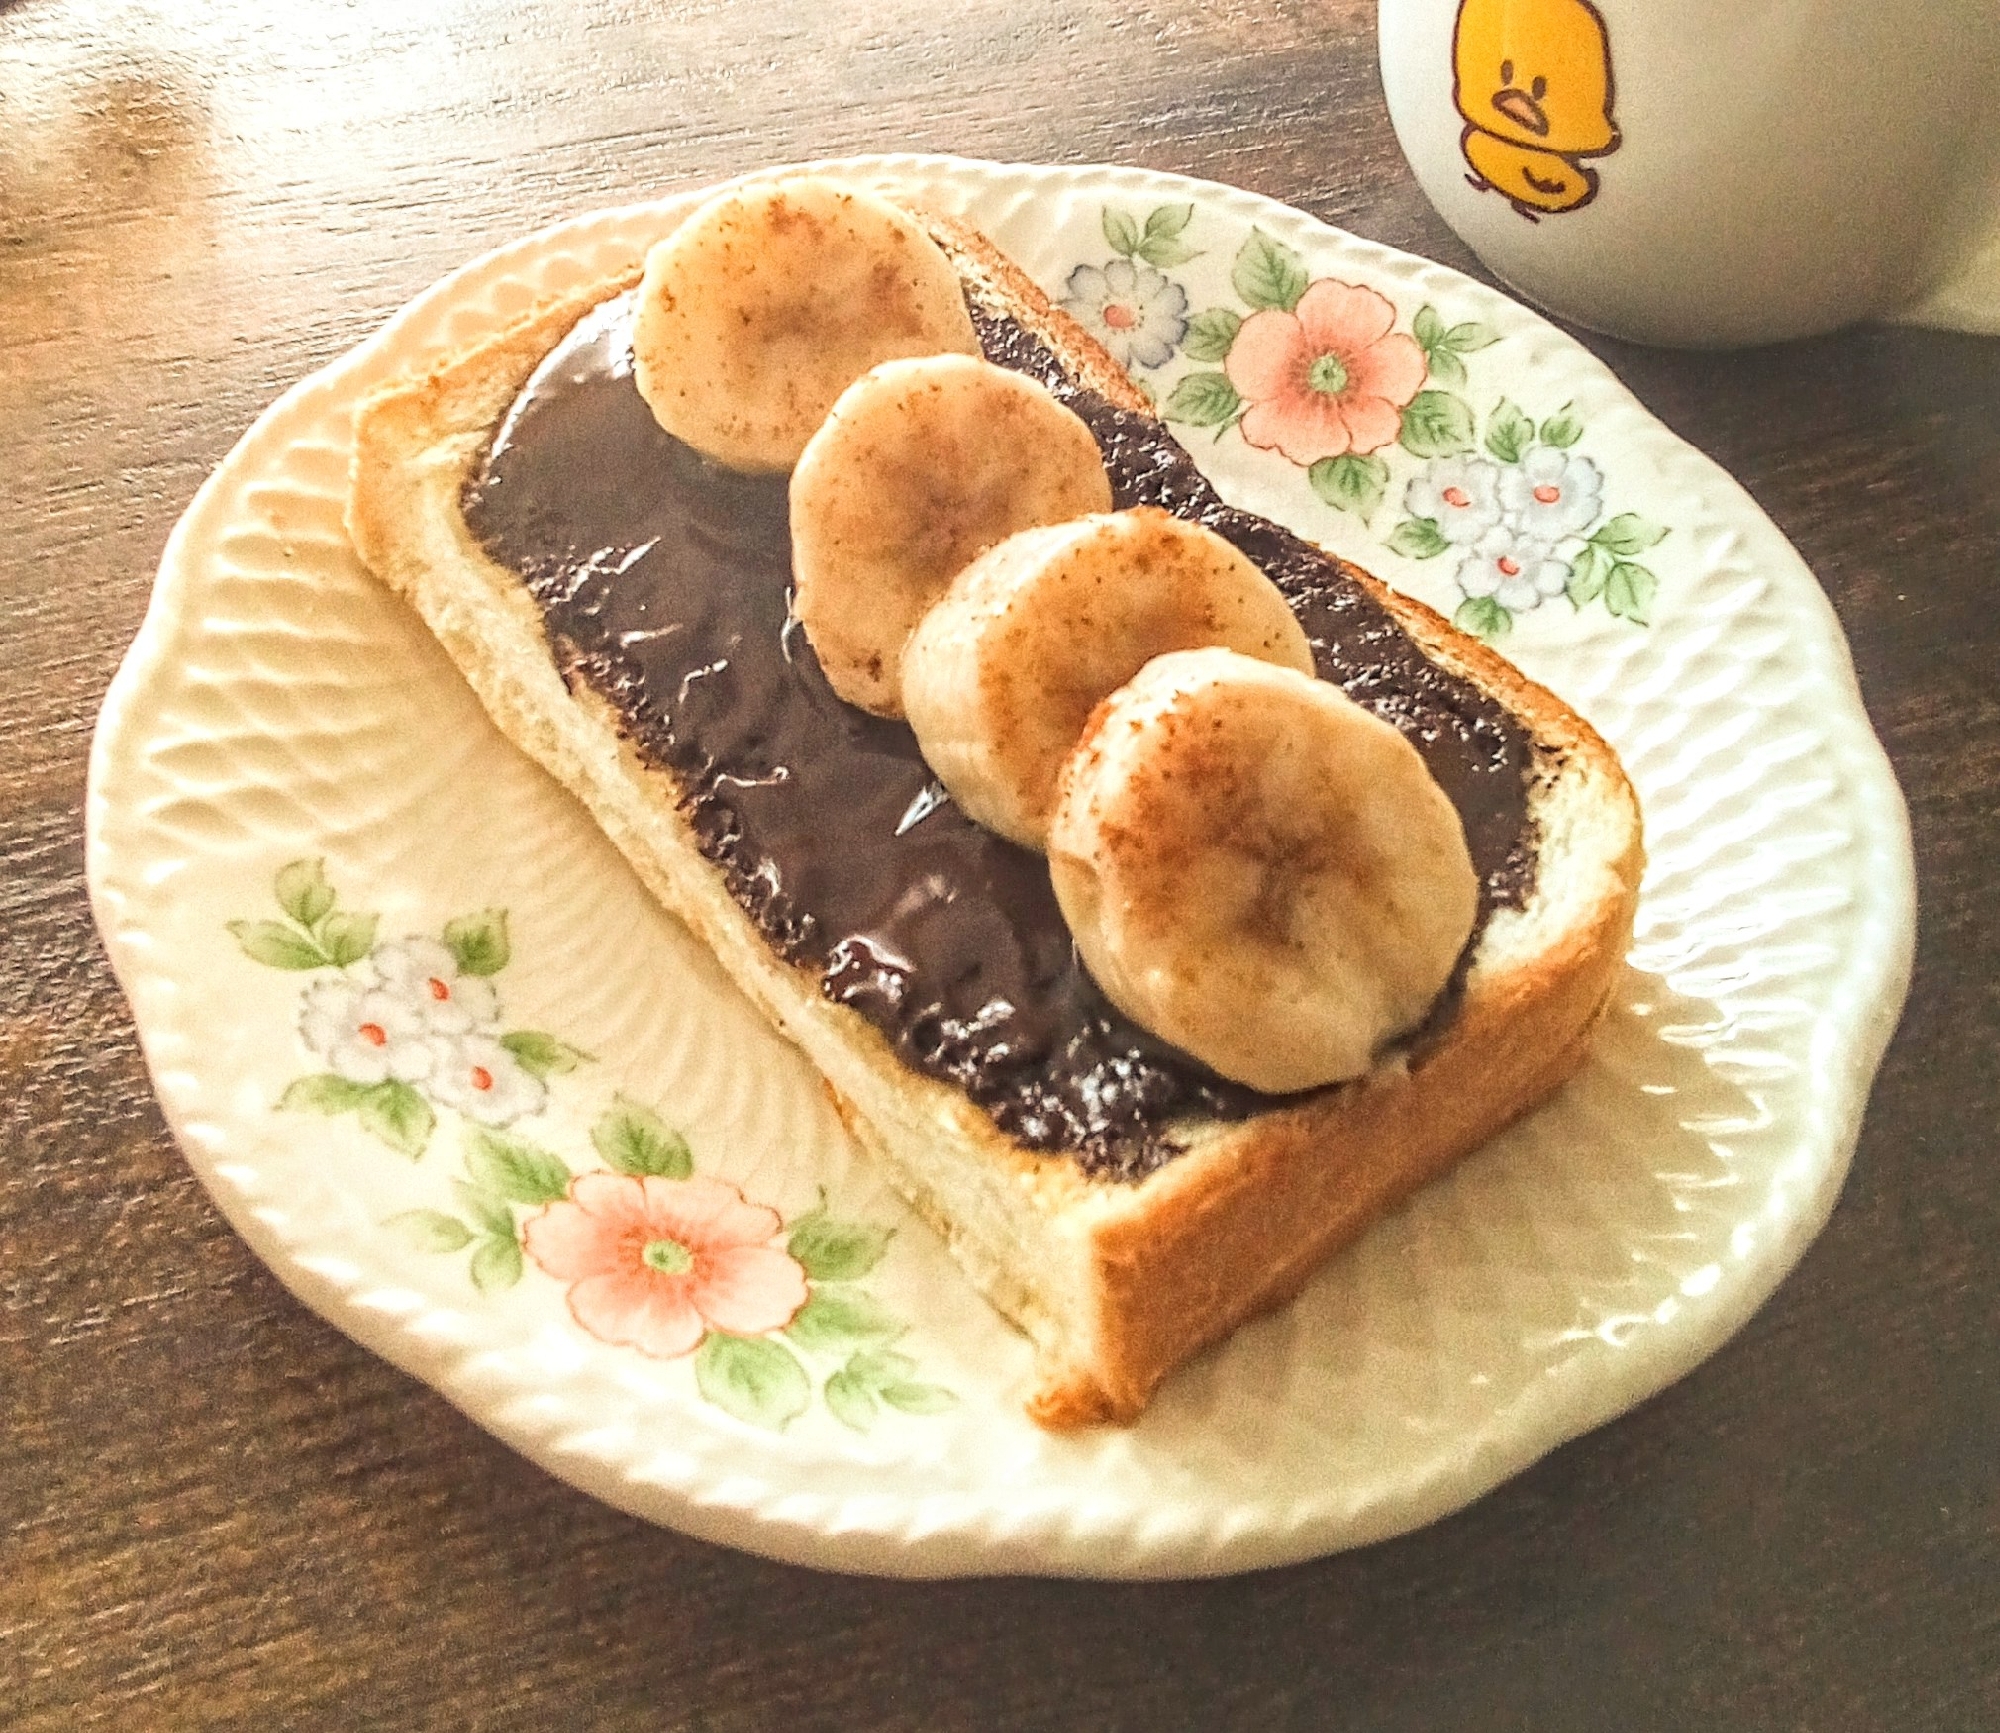 今日はトースト♡ビターチョコとバナナDeトースト♪